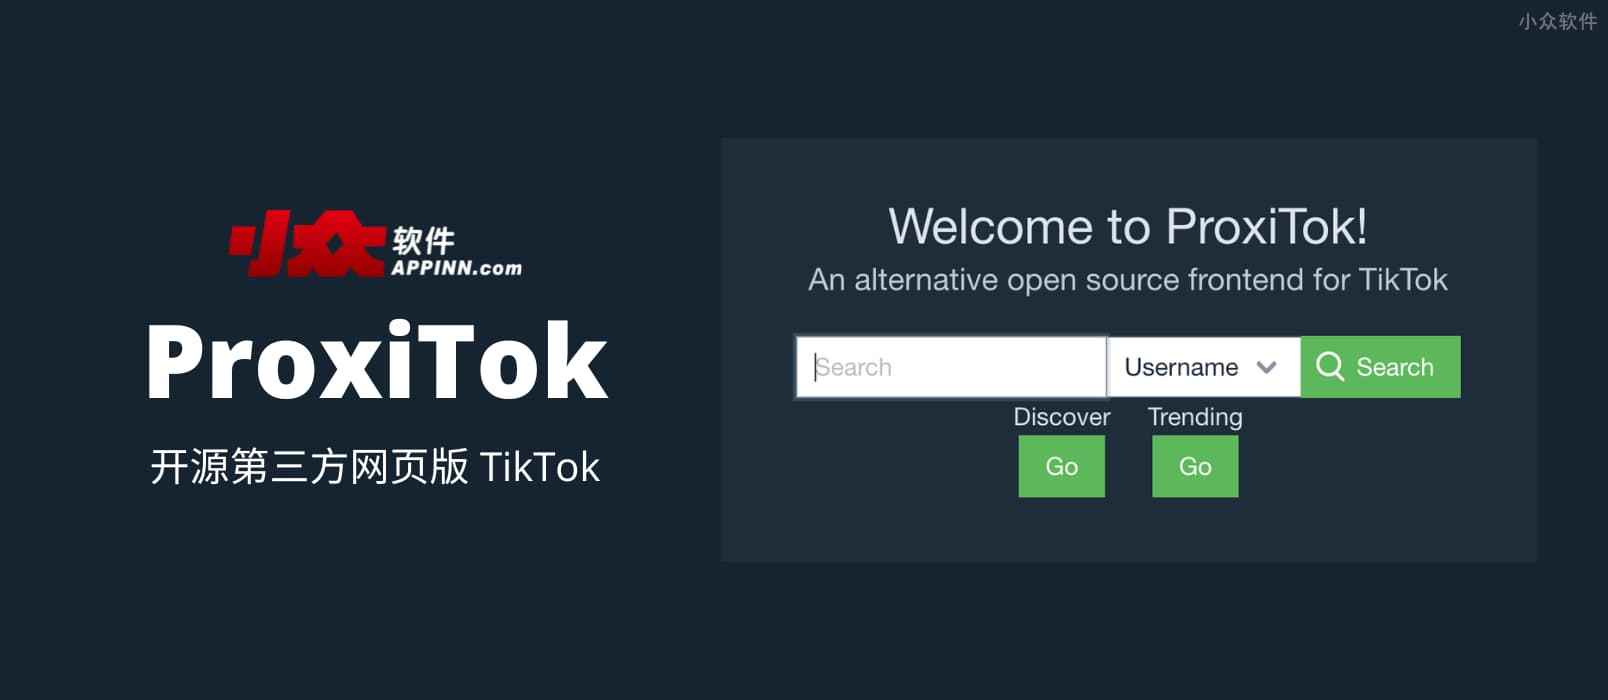 ProxiTok – 开源第三方网页版 TikTok，无需客户端直接浏览，支持 RSS 订阅，支持自托管，无跟踪、无用户画像